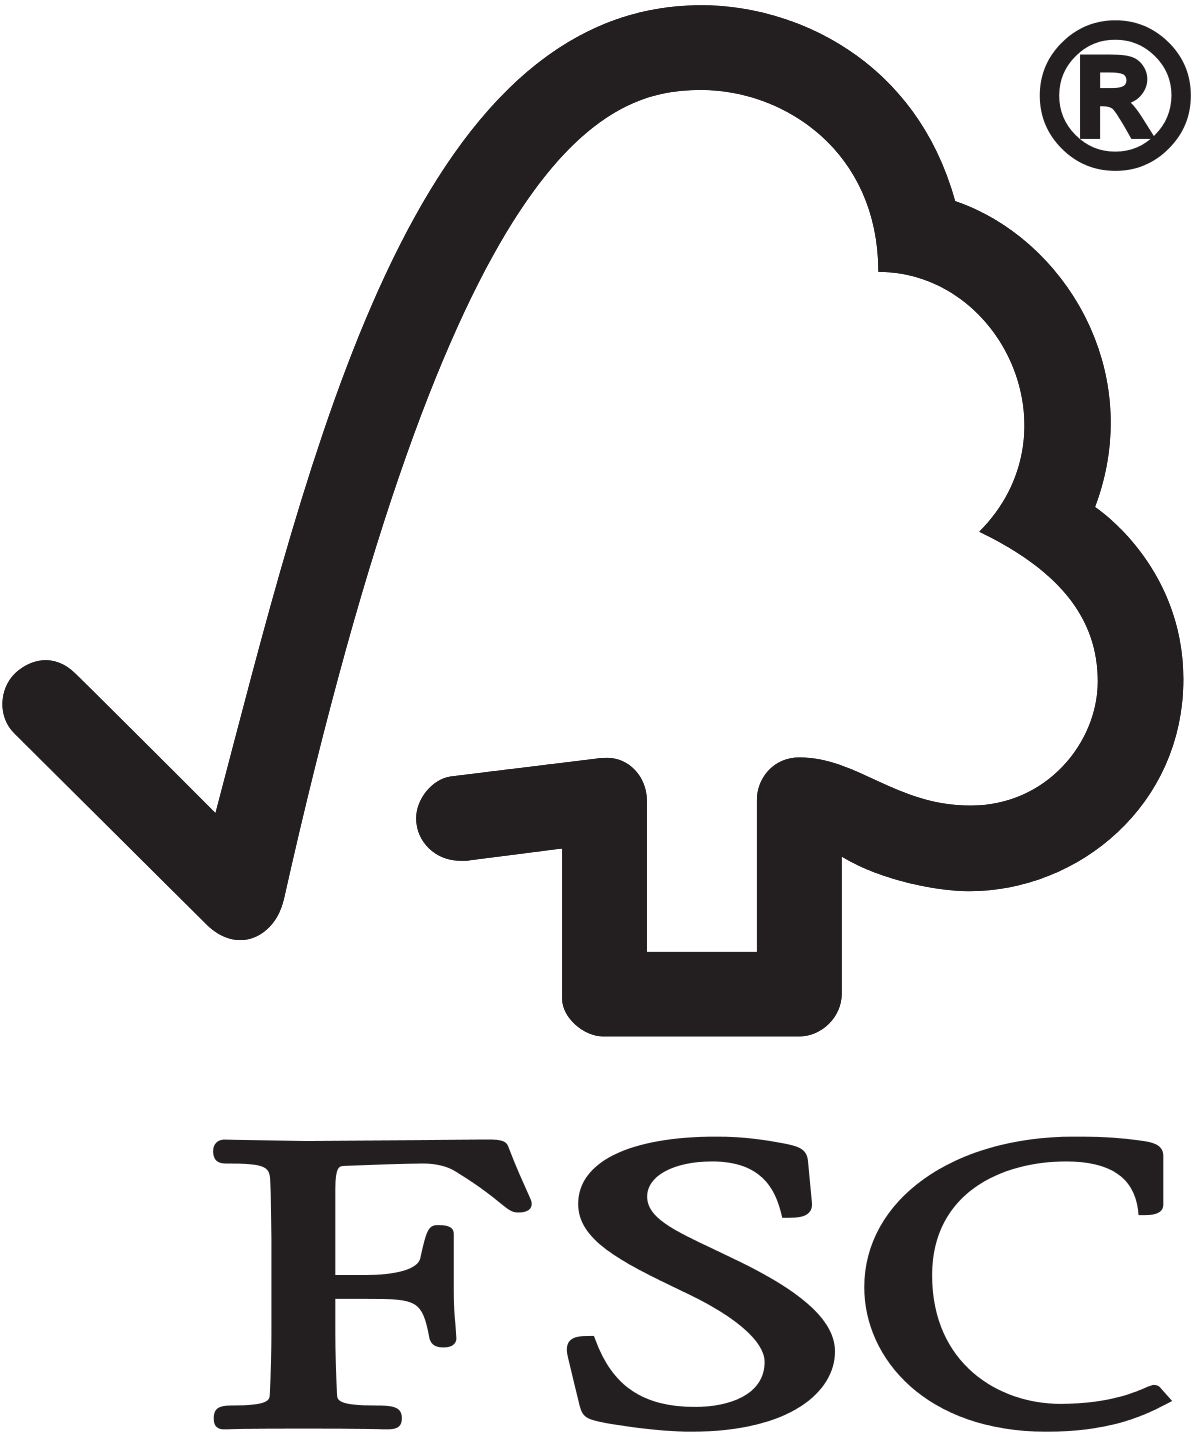 Forest Stewardship Council - U.S. logo